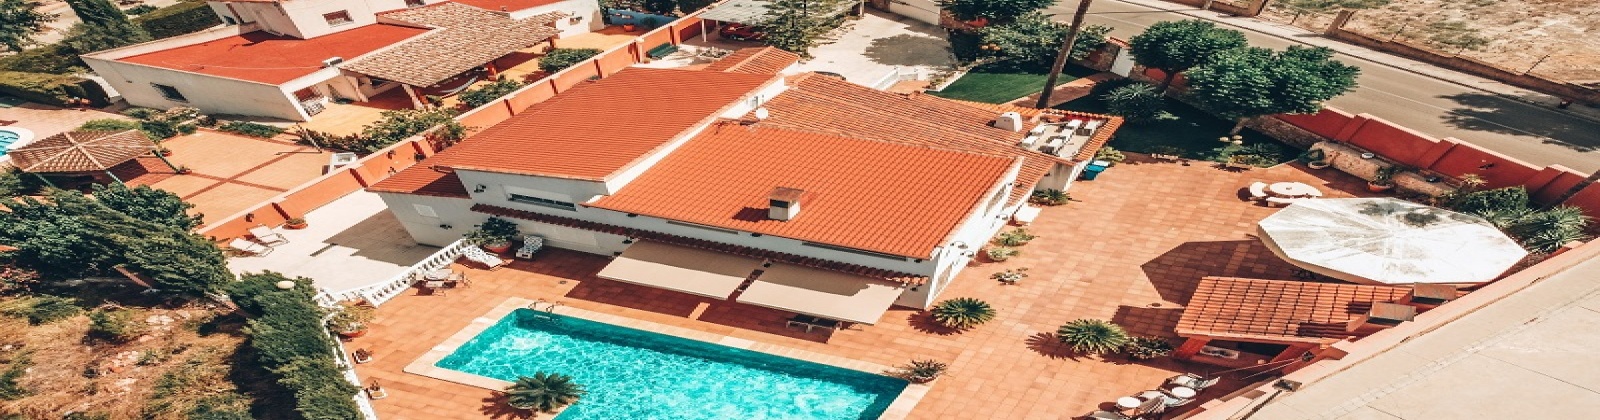 Vivienda Lujo en venta en Torre Guil 8 dormitorios piscina privada